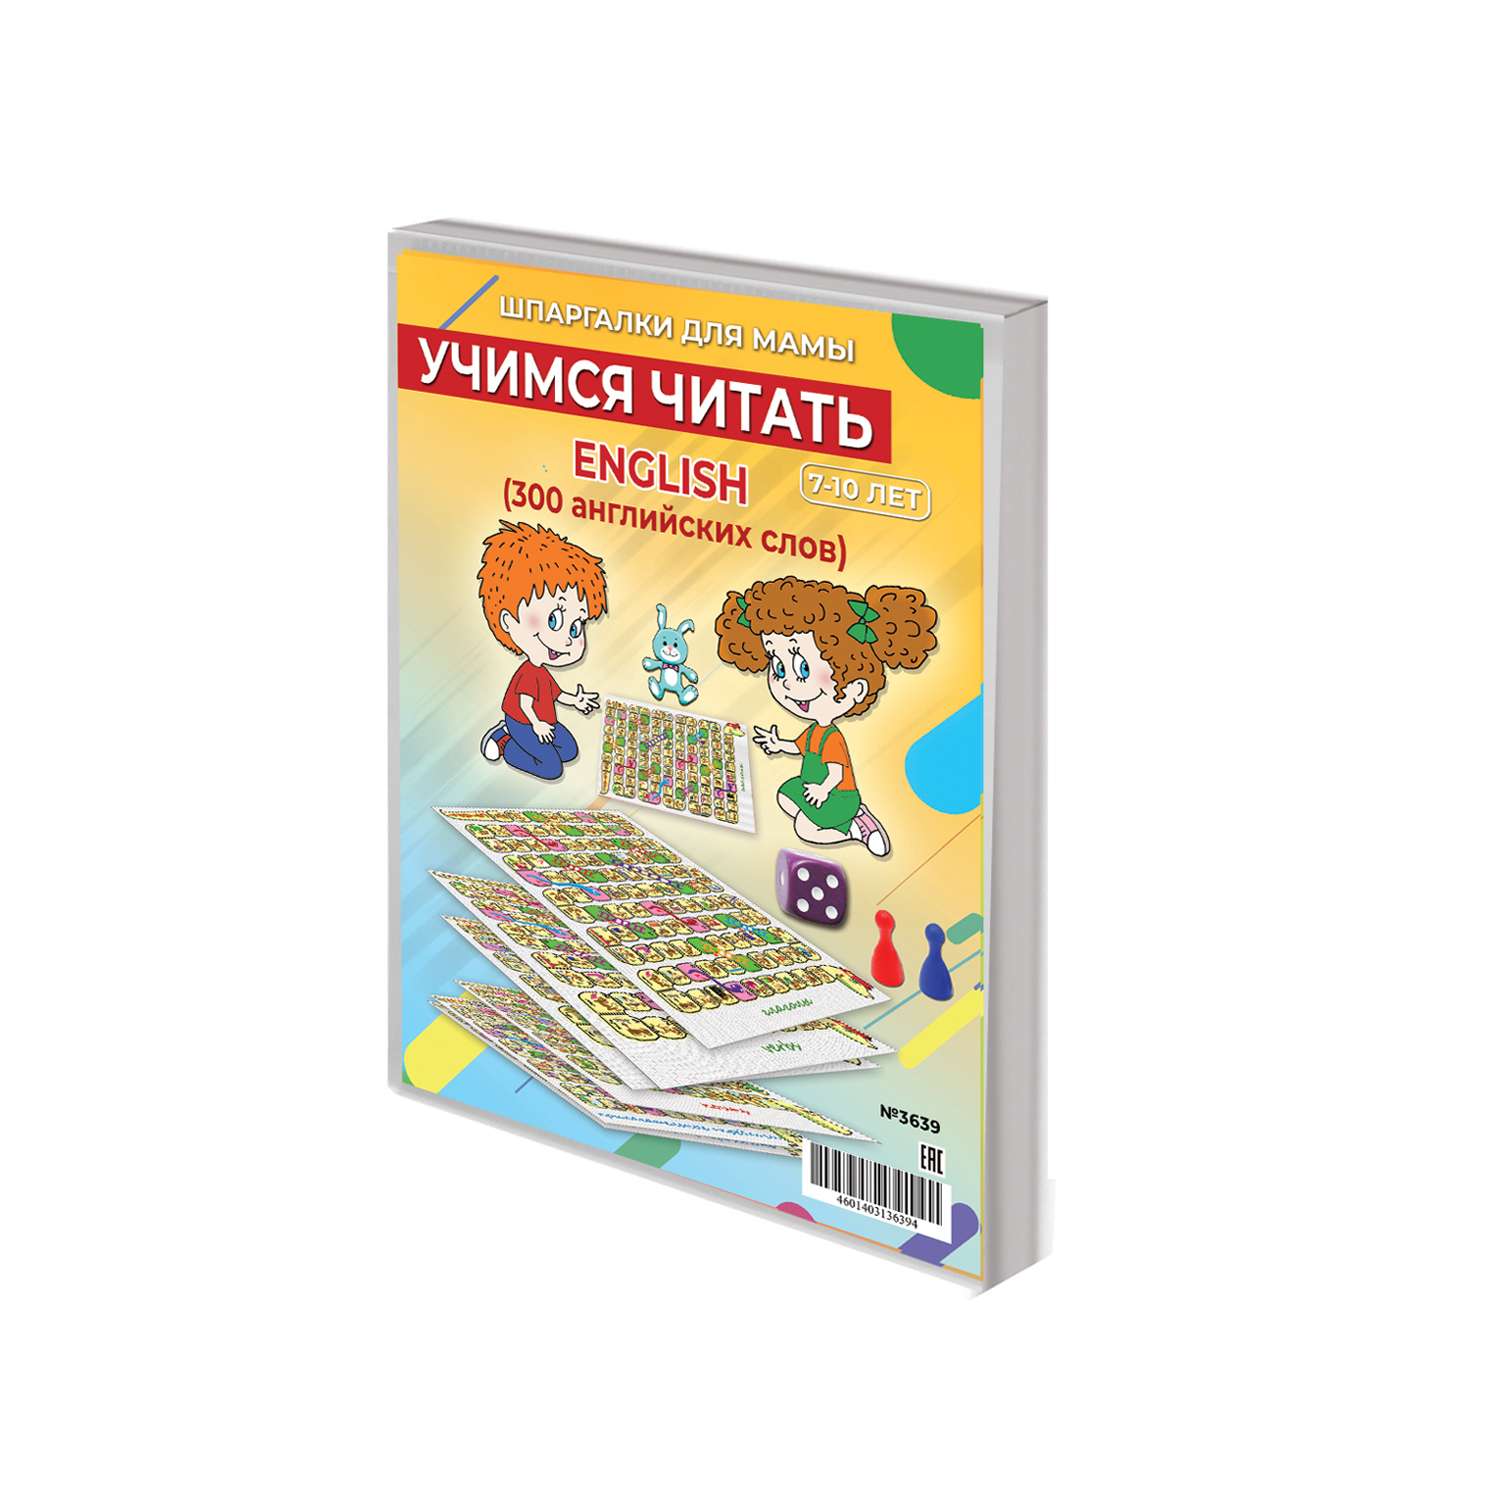 Настольная игра для детей Шпаргалки для мамы Учимся читать ENGLISH по английскому языку - фото 1